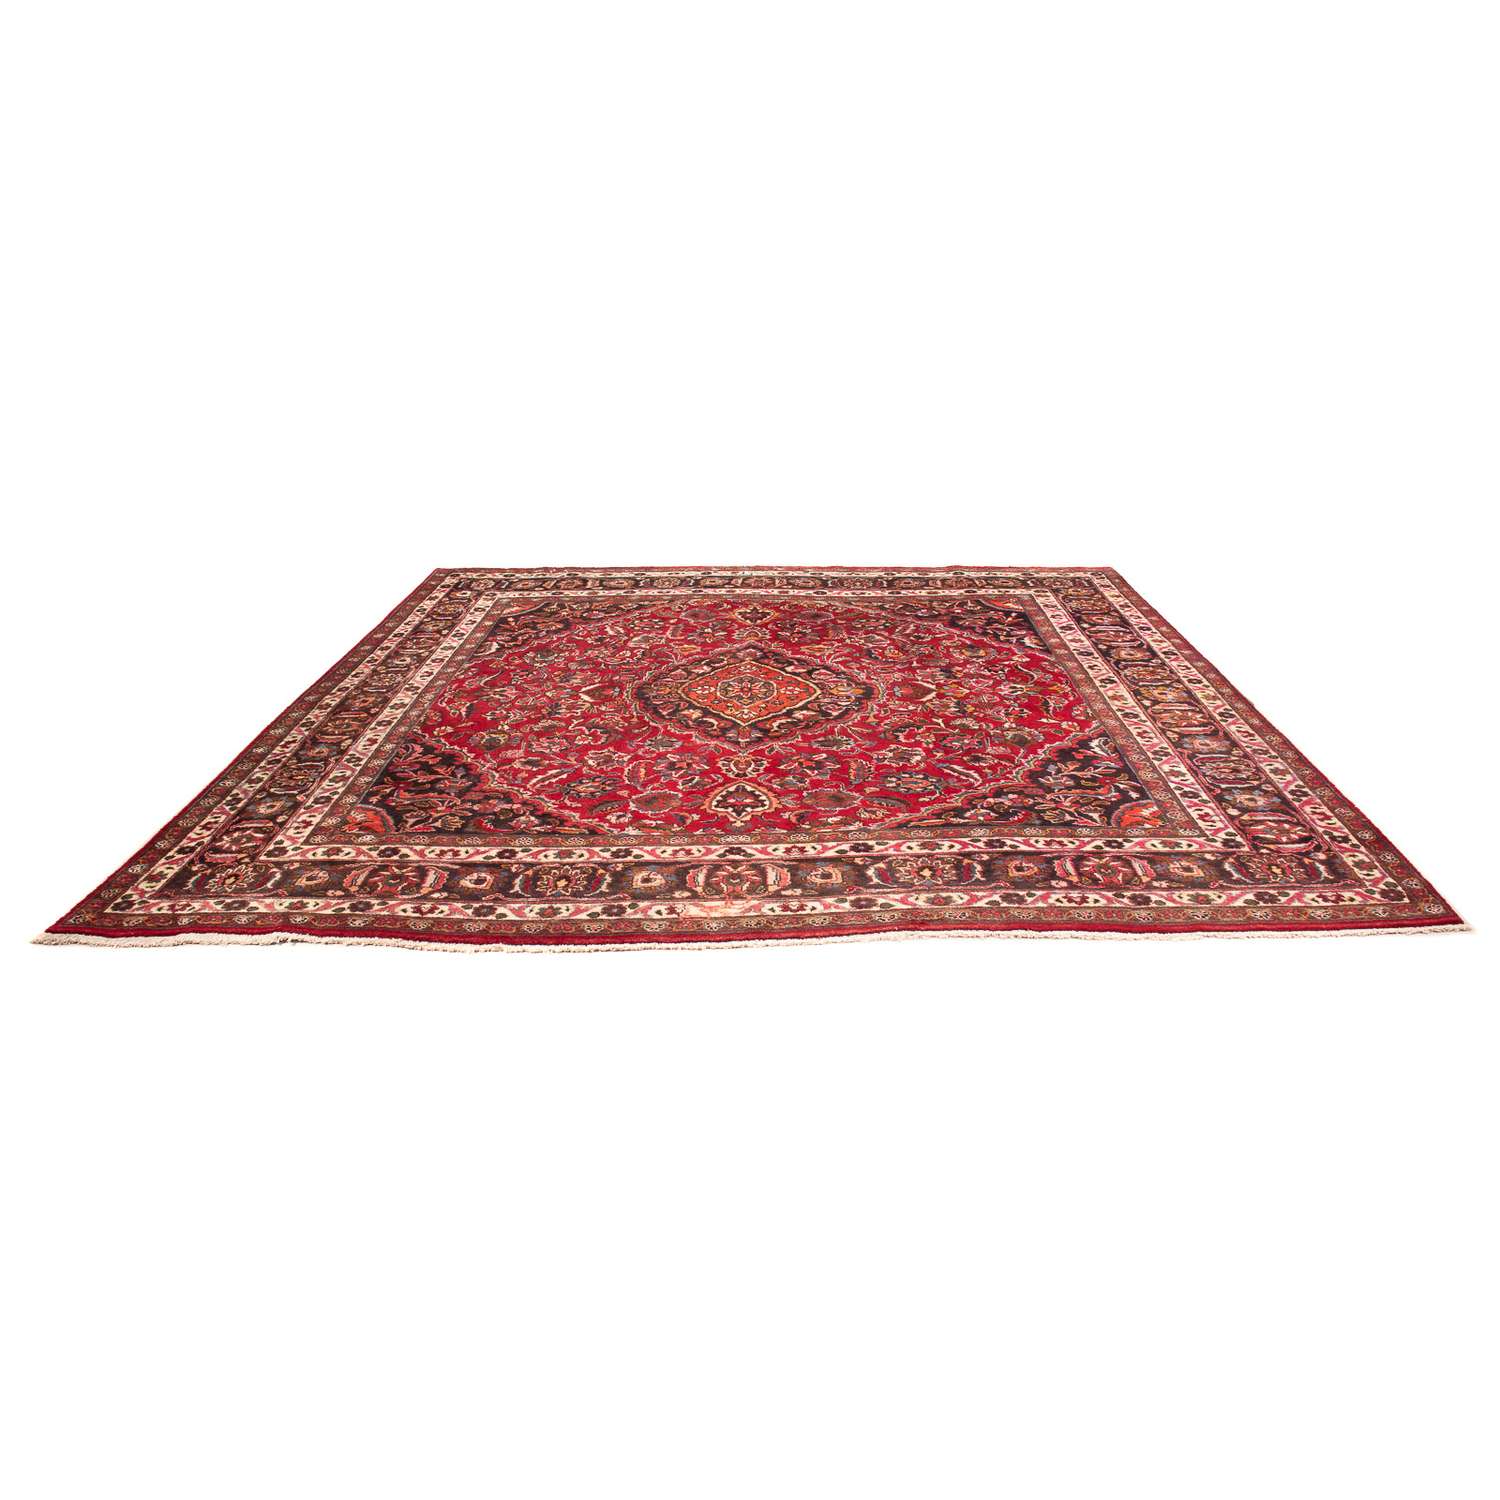 Perský koberec - Klasický čtvercový  - 320 x 300 cm - tmavě červená